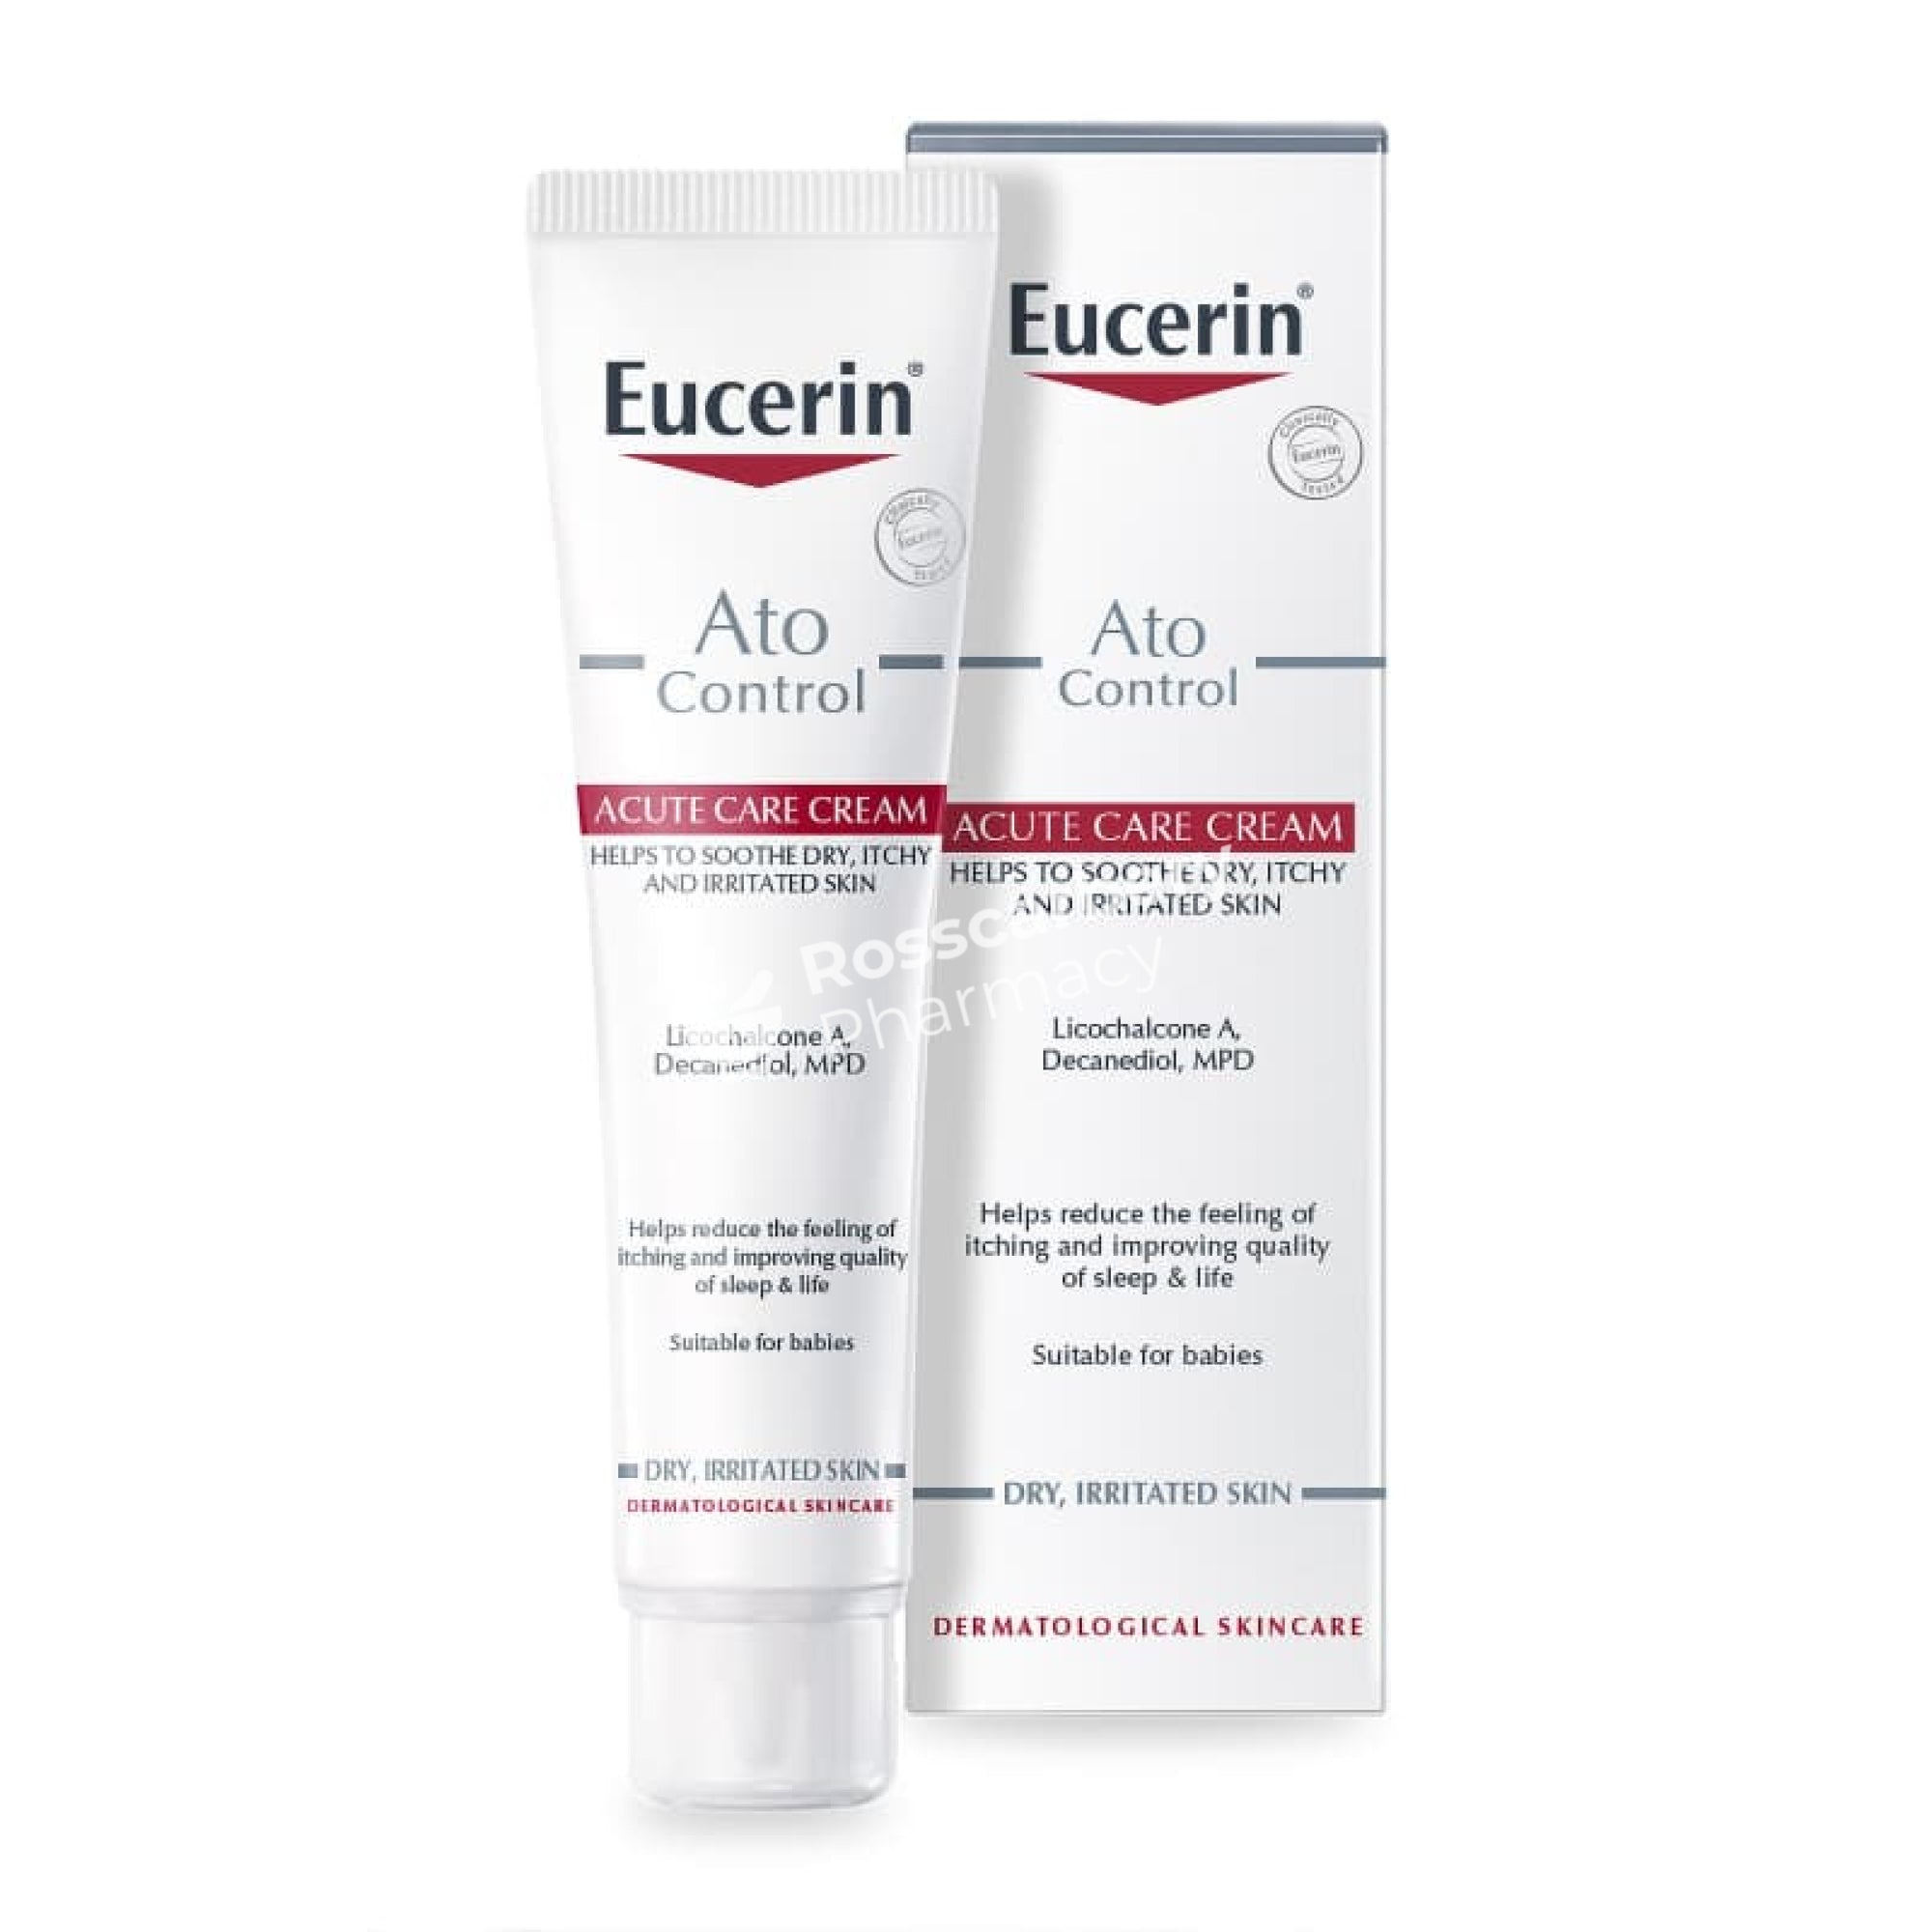 Eucerin Atocontrol Acute Care Cream Facial Moisturiser